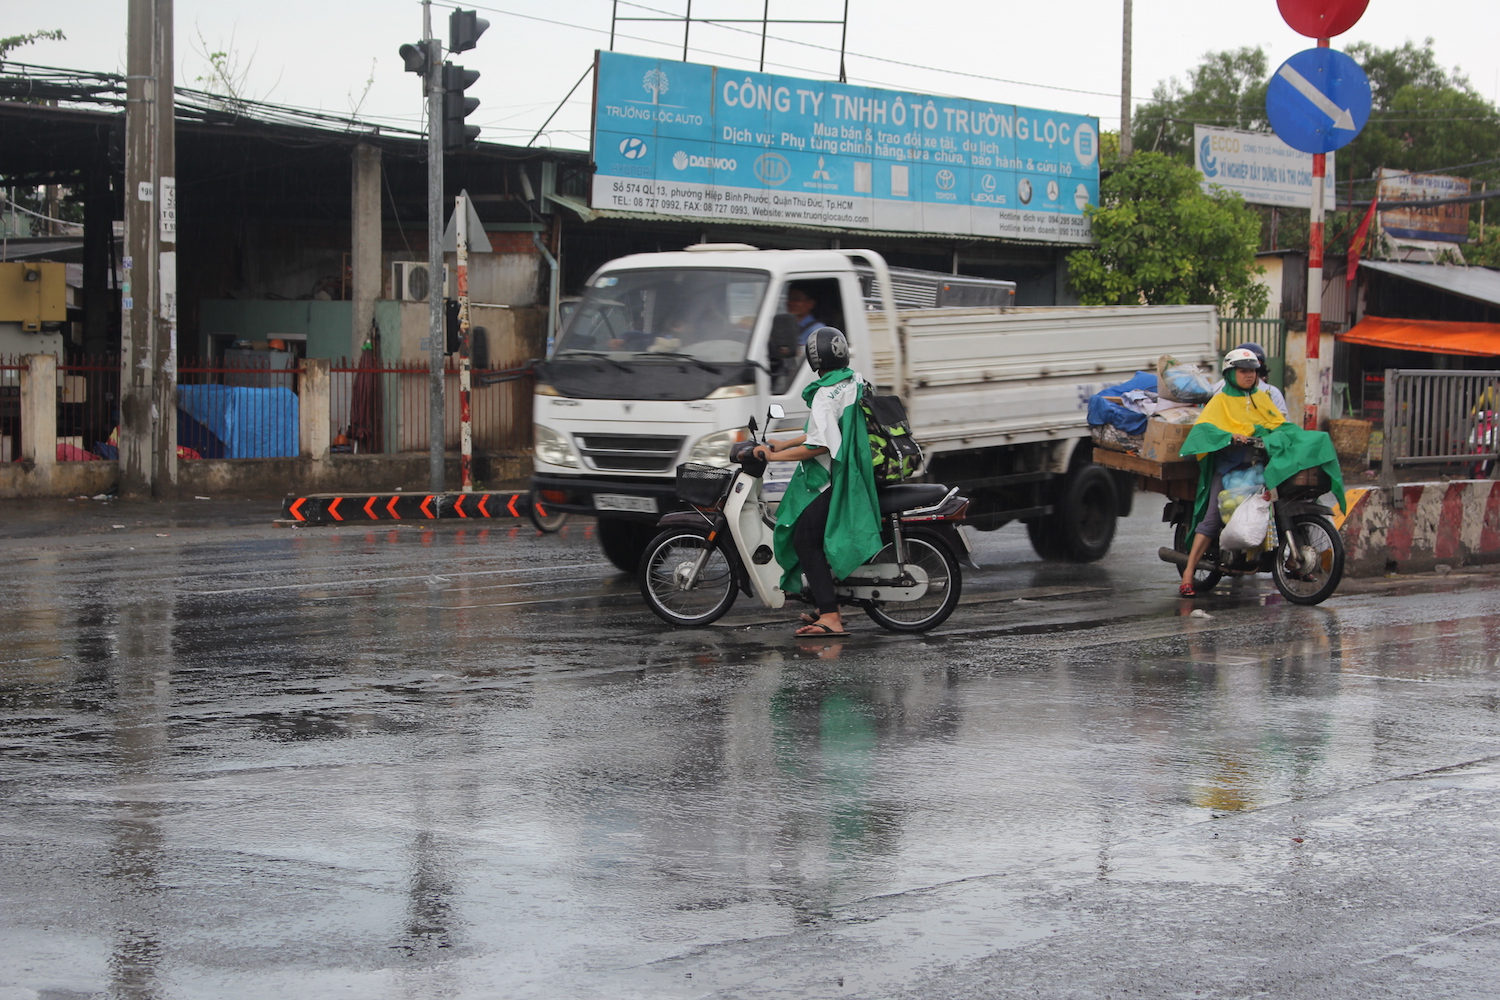 Tại quốc lộ 13, cơn mưa bắt đầu khoảng 15 giờ - Ảnh: Phạm Hữu